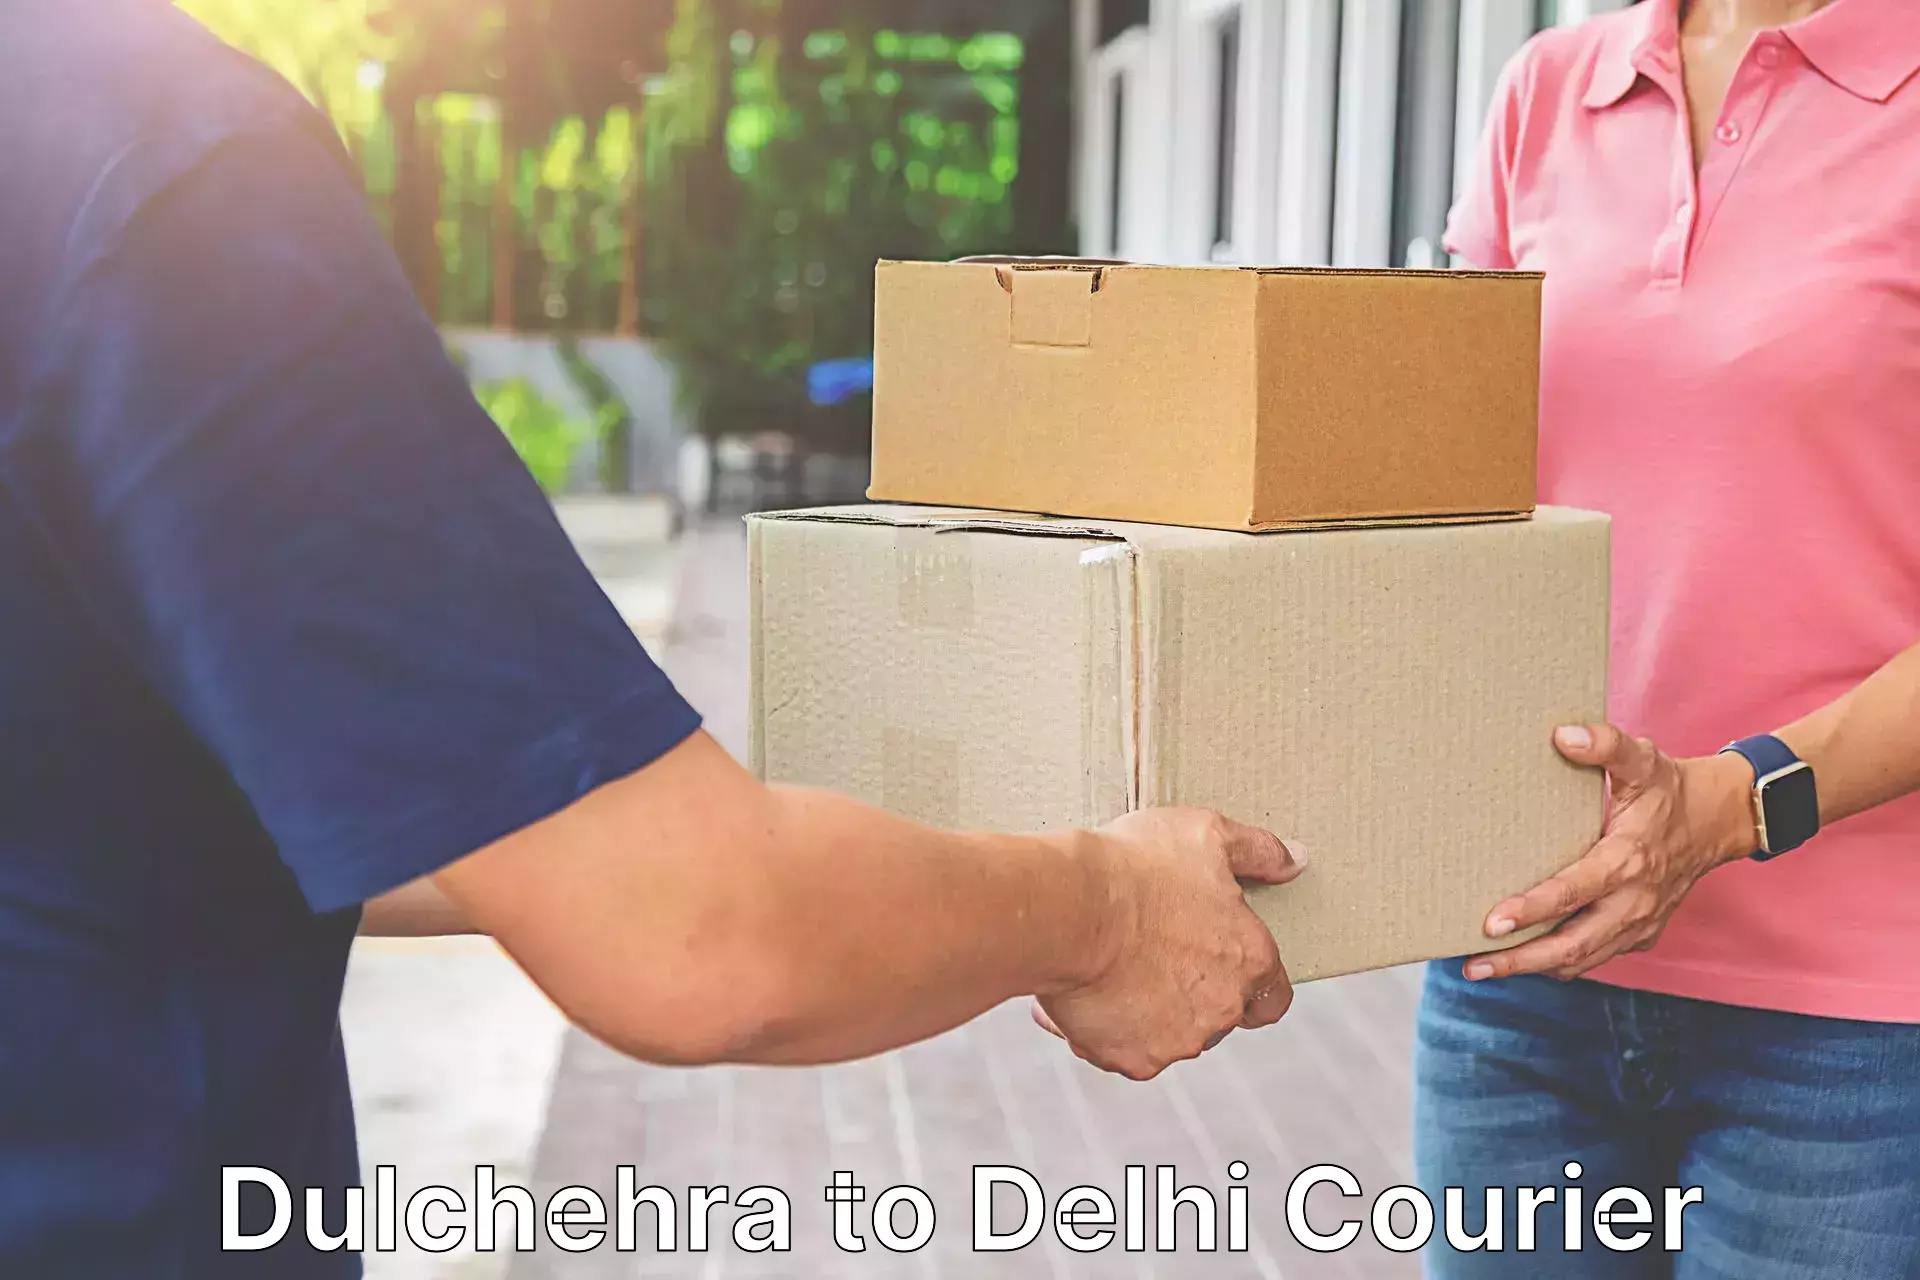 User-friendly courier app Dulchehra to Subhash Nagar